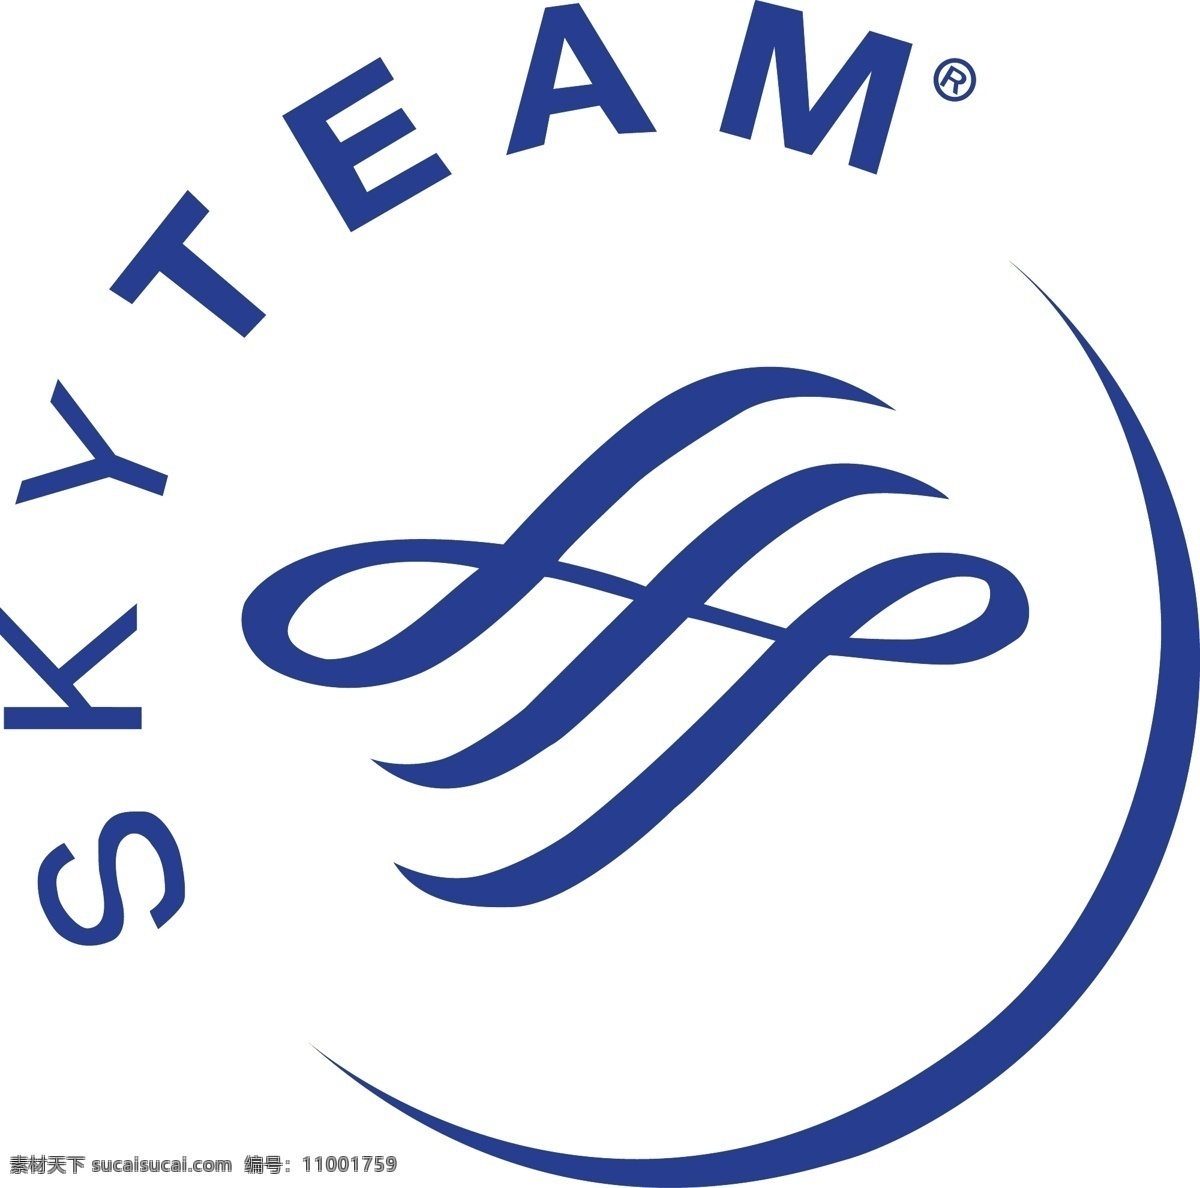 中国 南方航空 天合 联盟 标志 矢量 中国南方航空 南航 天合联盟 企业 logo 标识标志图标